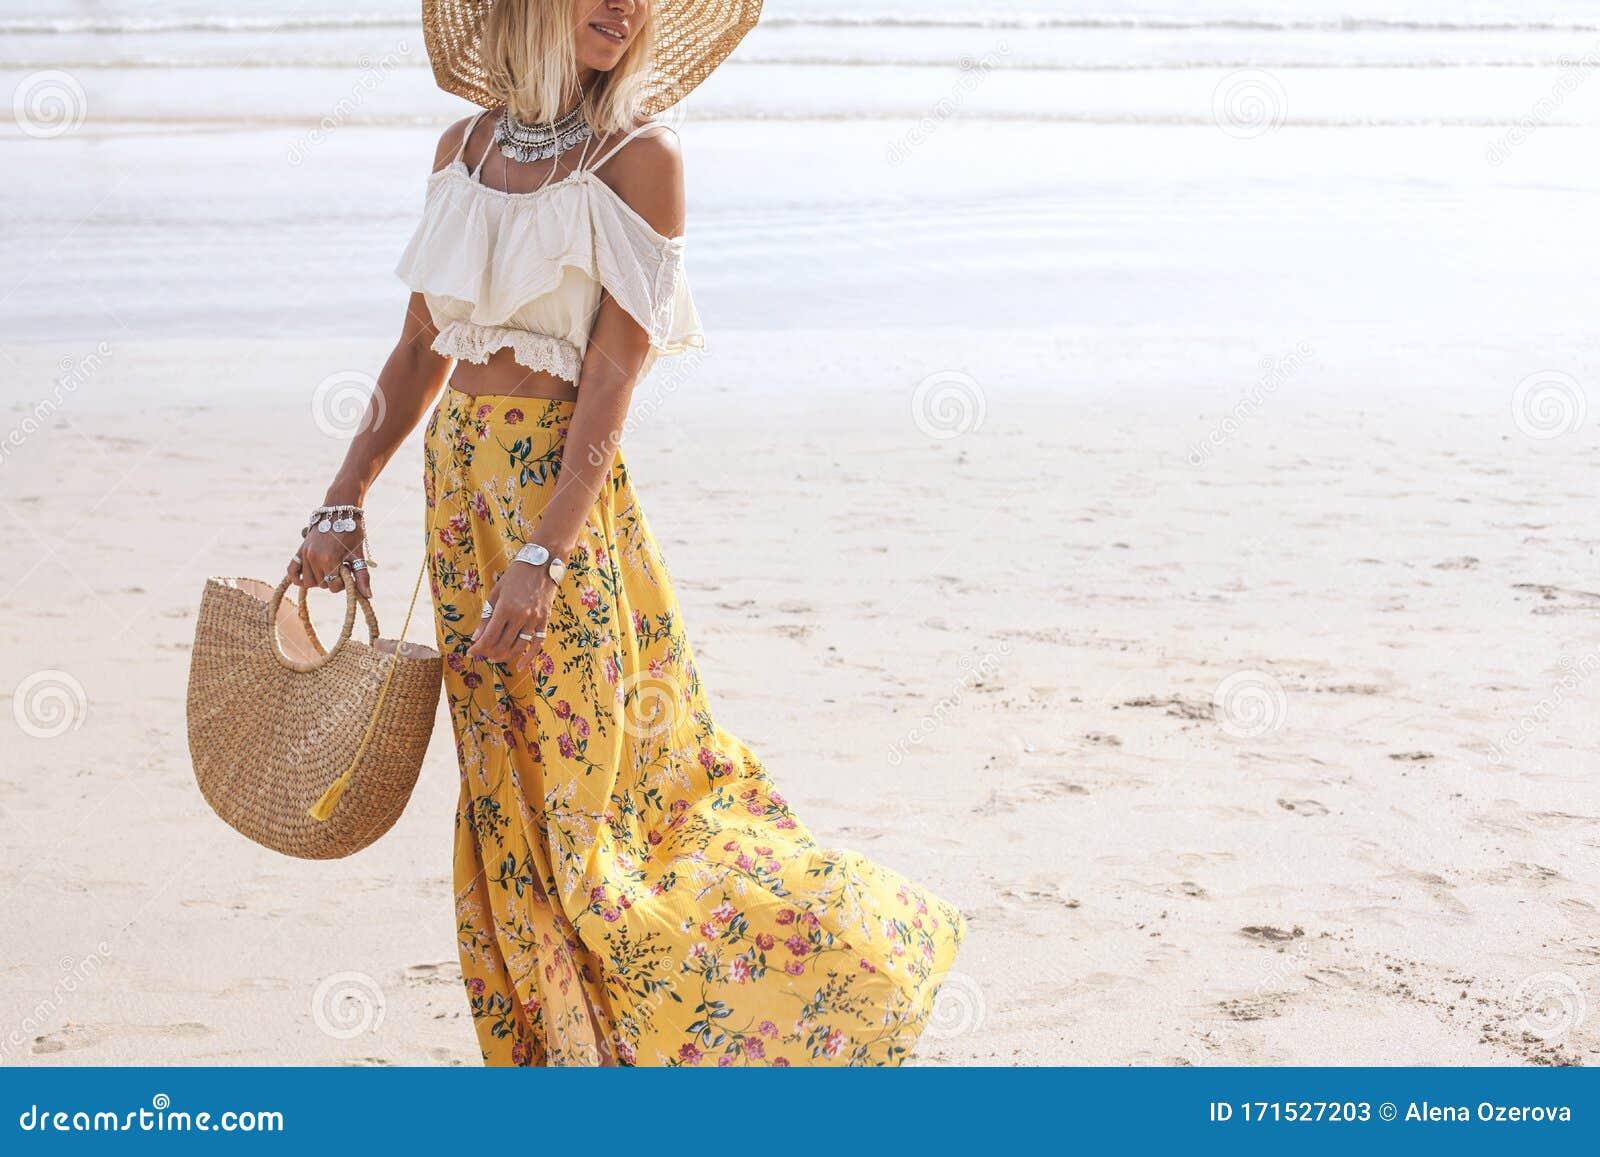 censur forstyrrelse grund Boho beach clothing style stock image. Image of outdoor - 171527203